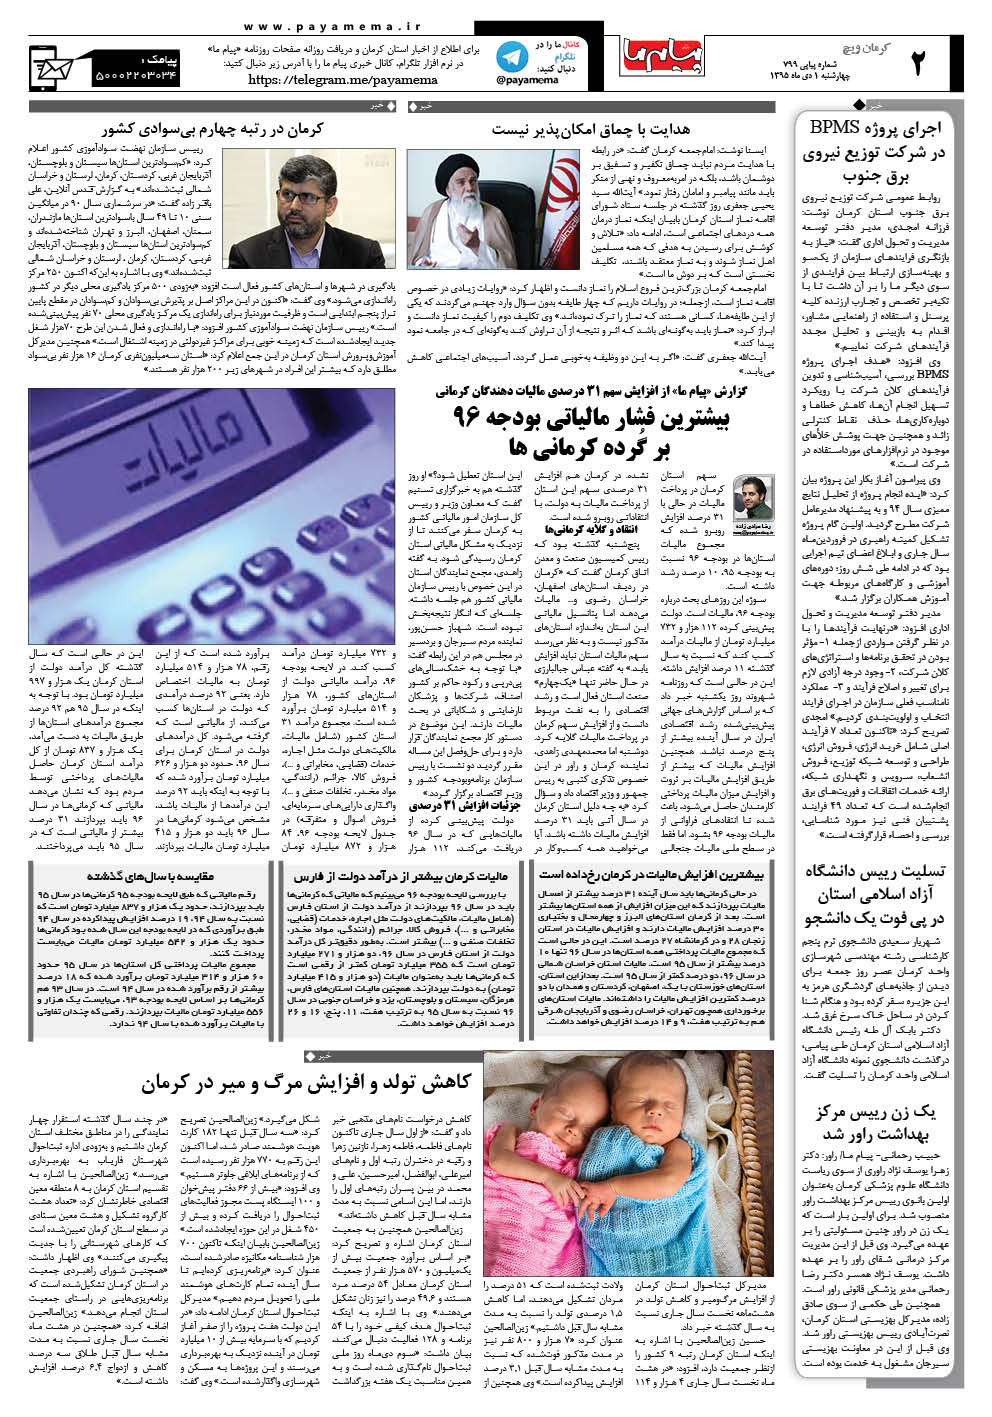 صفحه کرمان ویچ شماره 799 روزنامه پیام ما